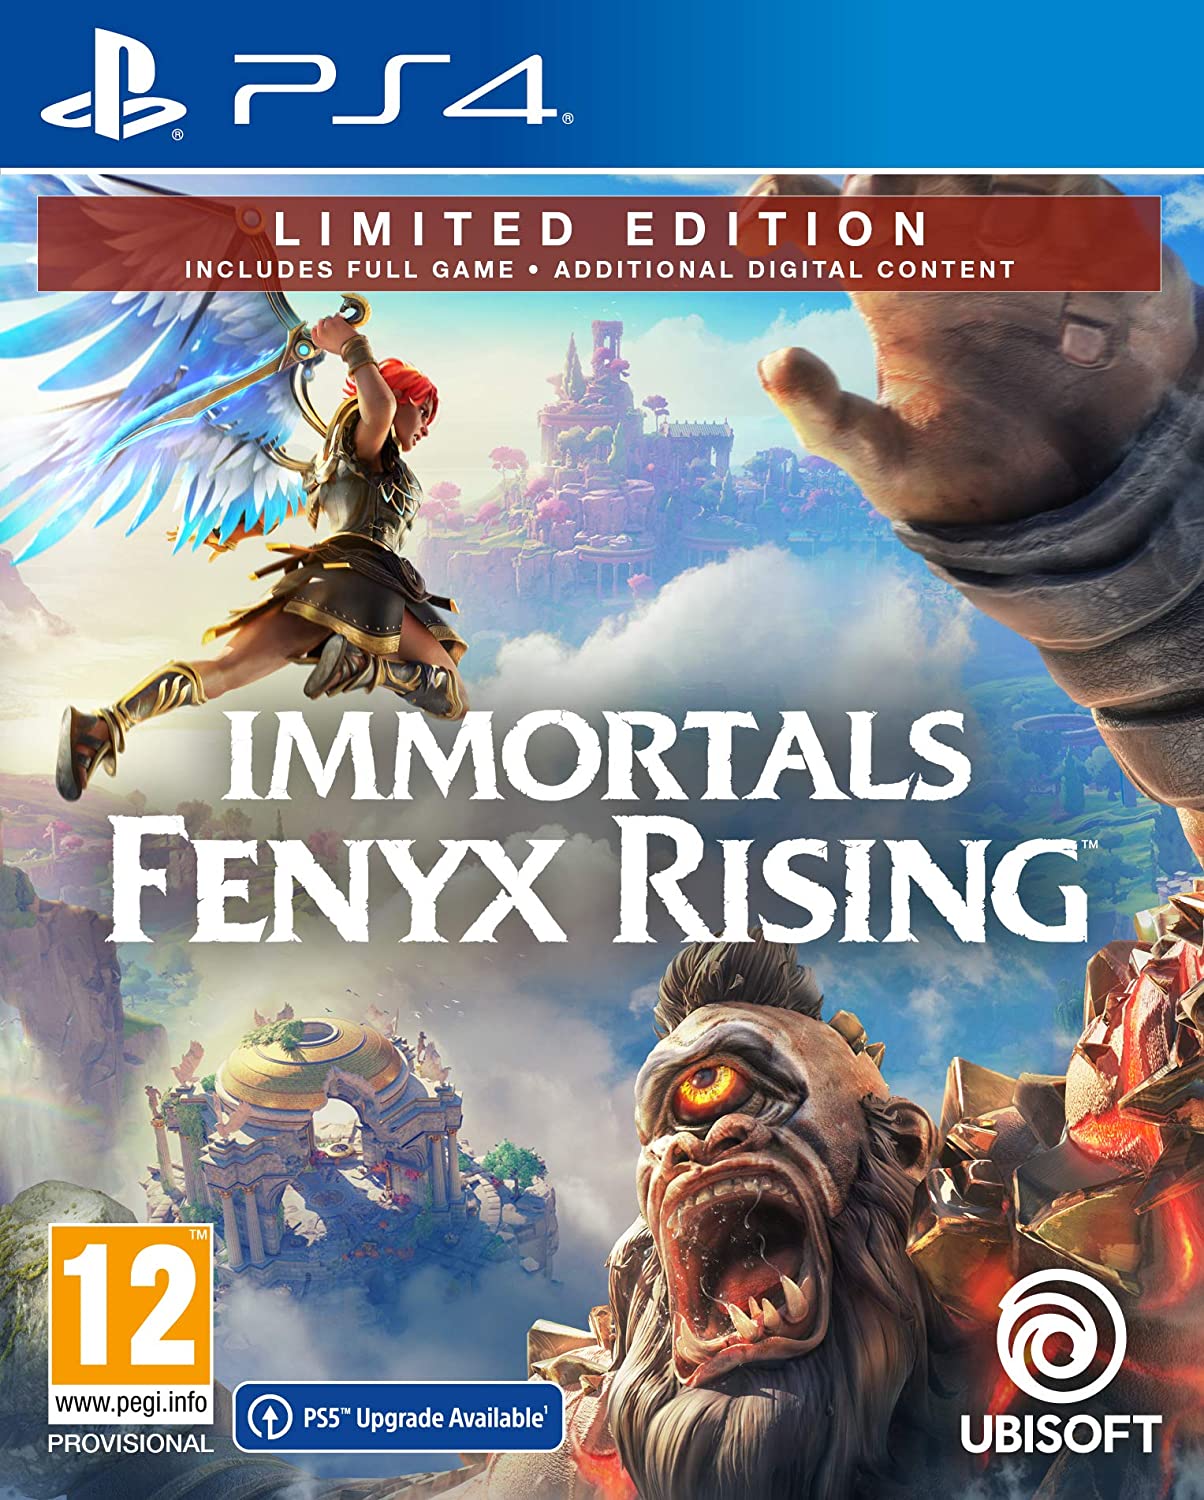 Immortals fenyx rising 5 1 1